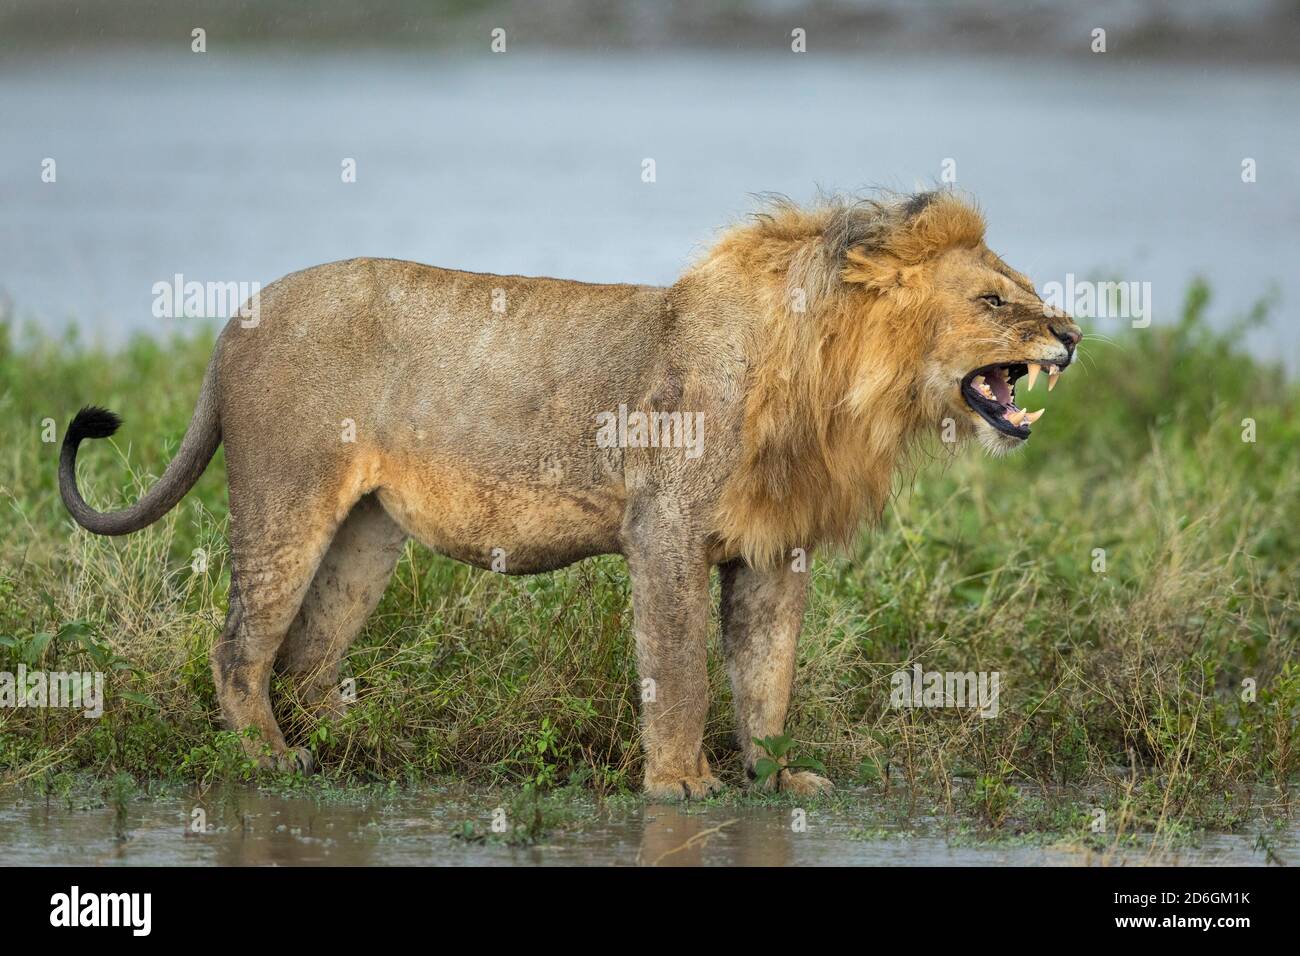 Männlicher Löwe knarlend, der Aggression zeigt, während er im grünen Busch steht In der Nähe von Wasser in Ndutu in Tansania Stockfoto